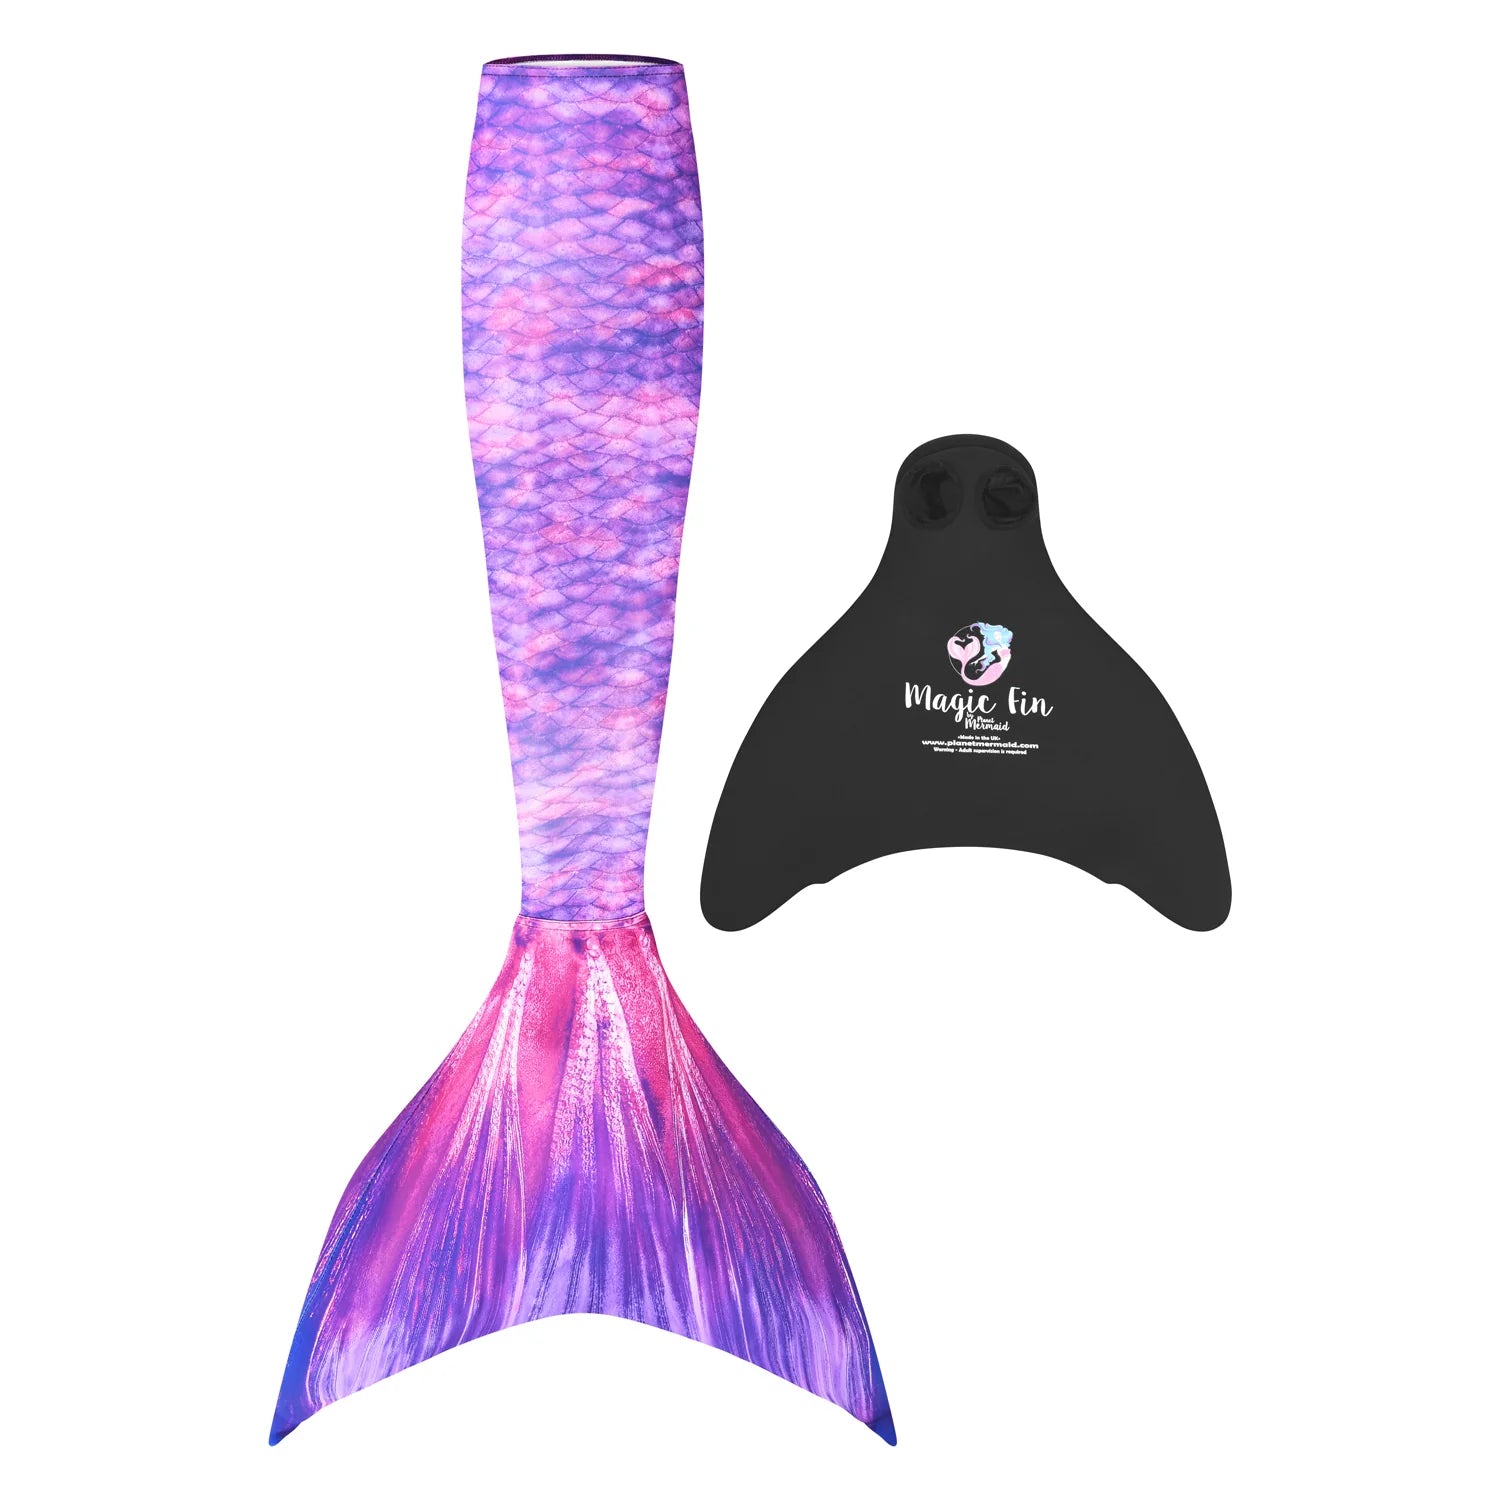 Cola de sirena Purple surf